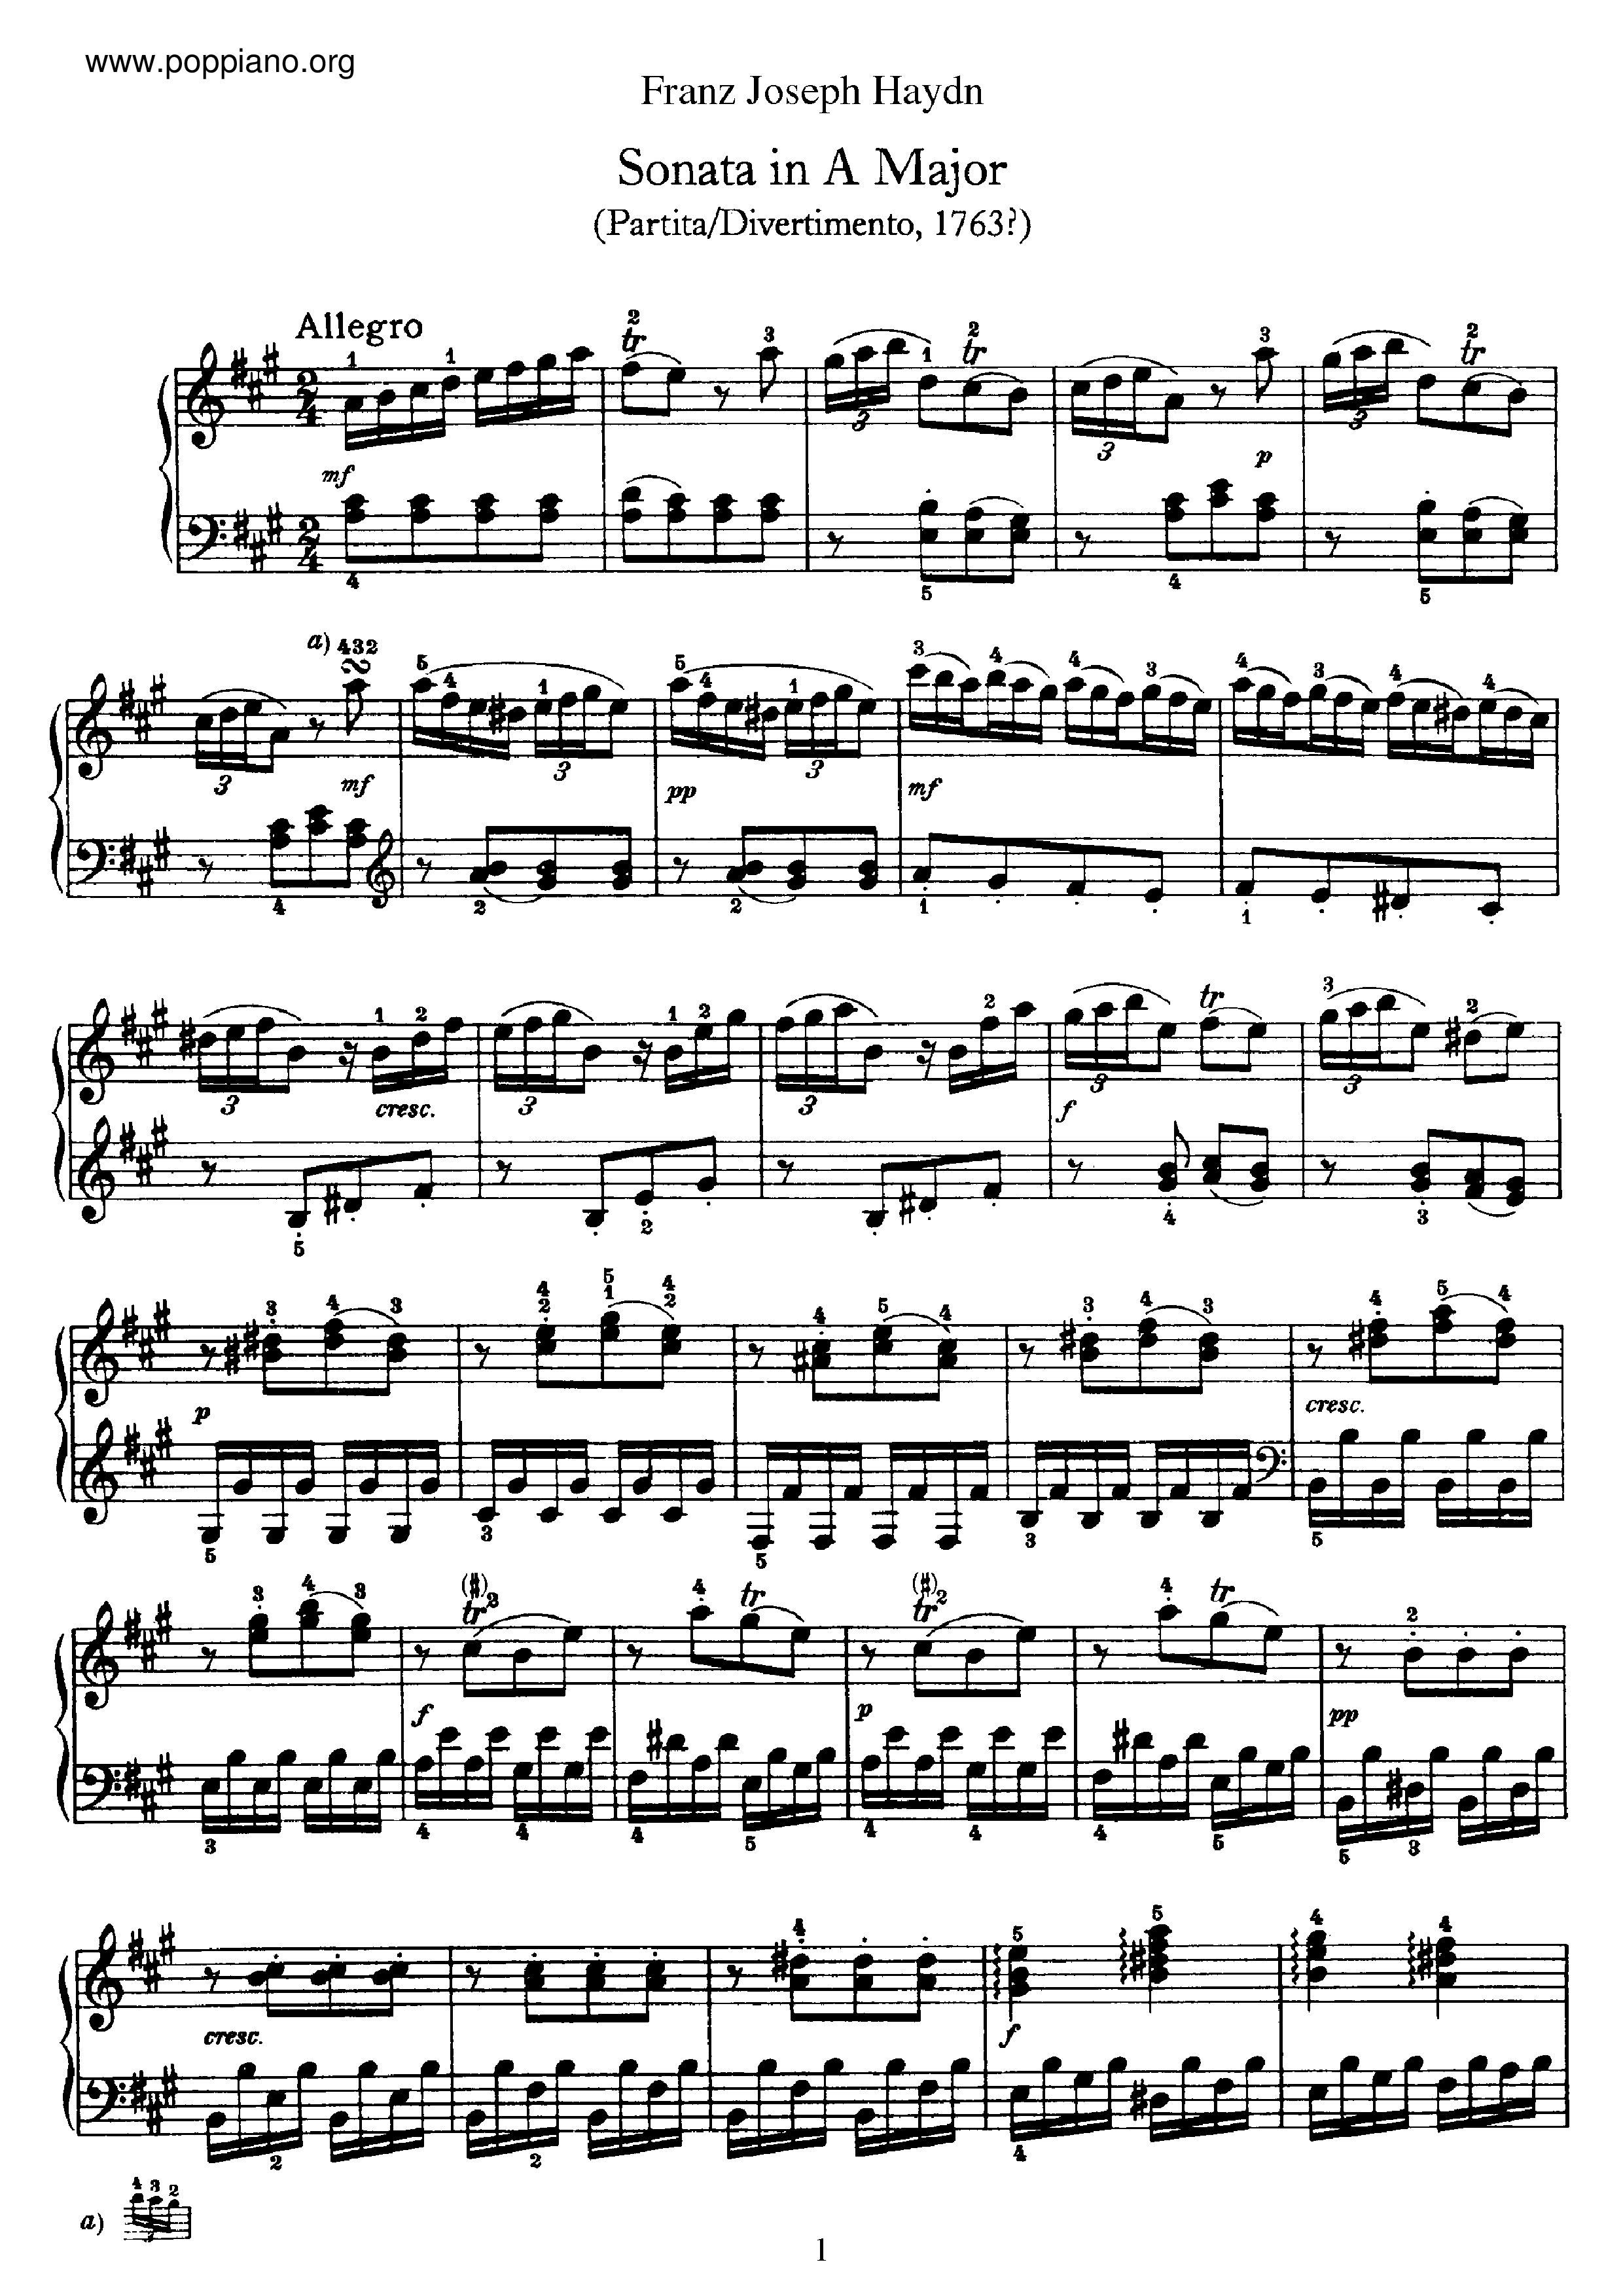 Sonata No.5 in A major Score